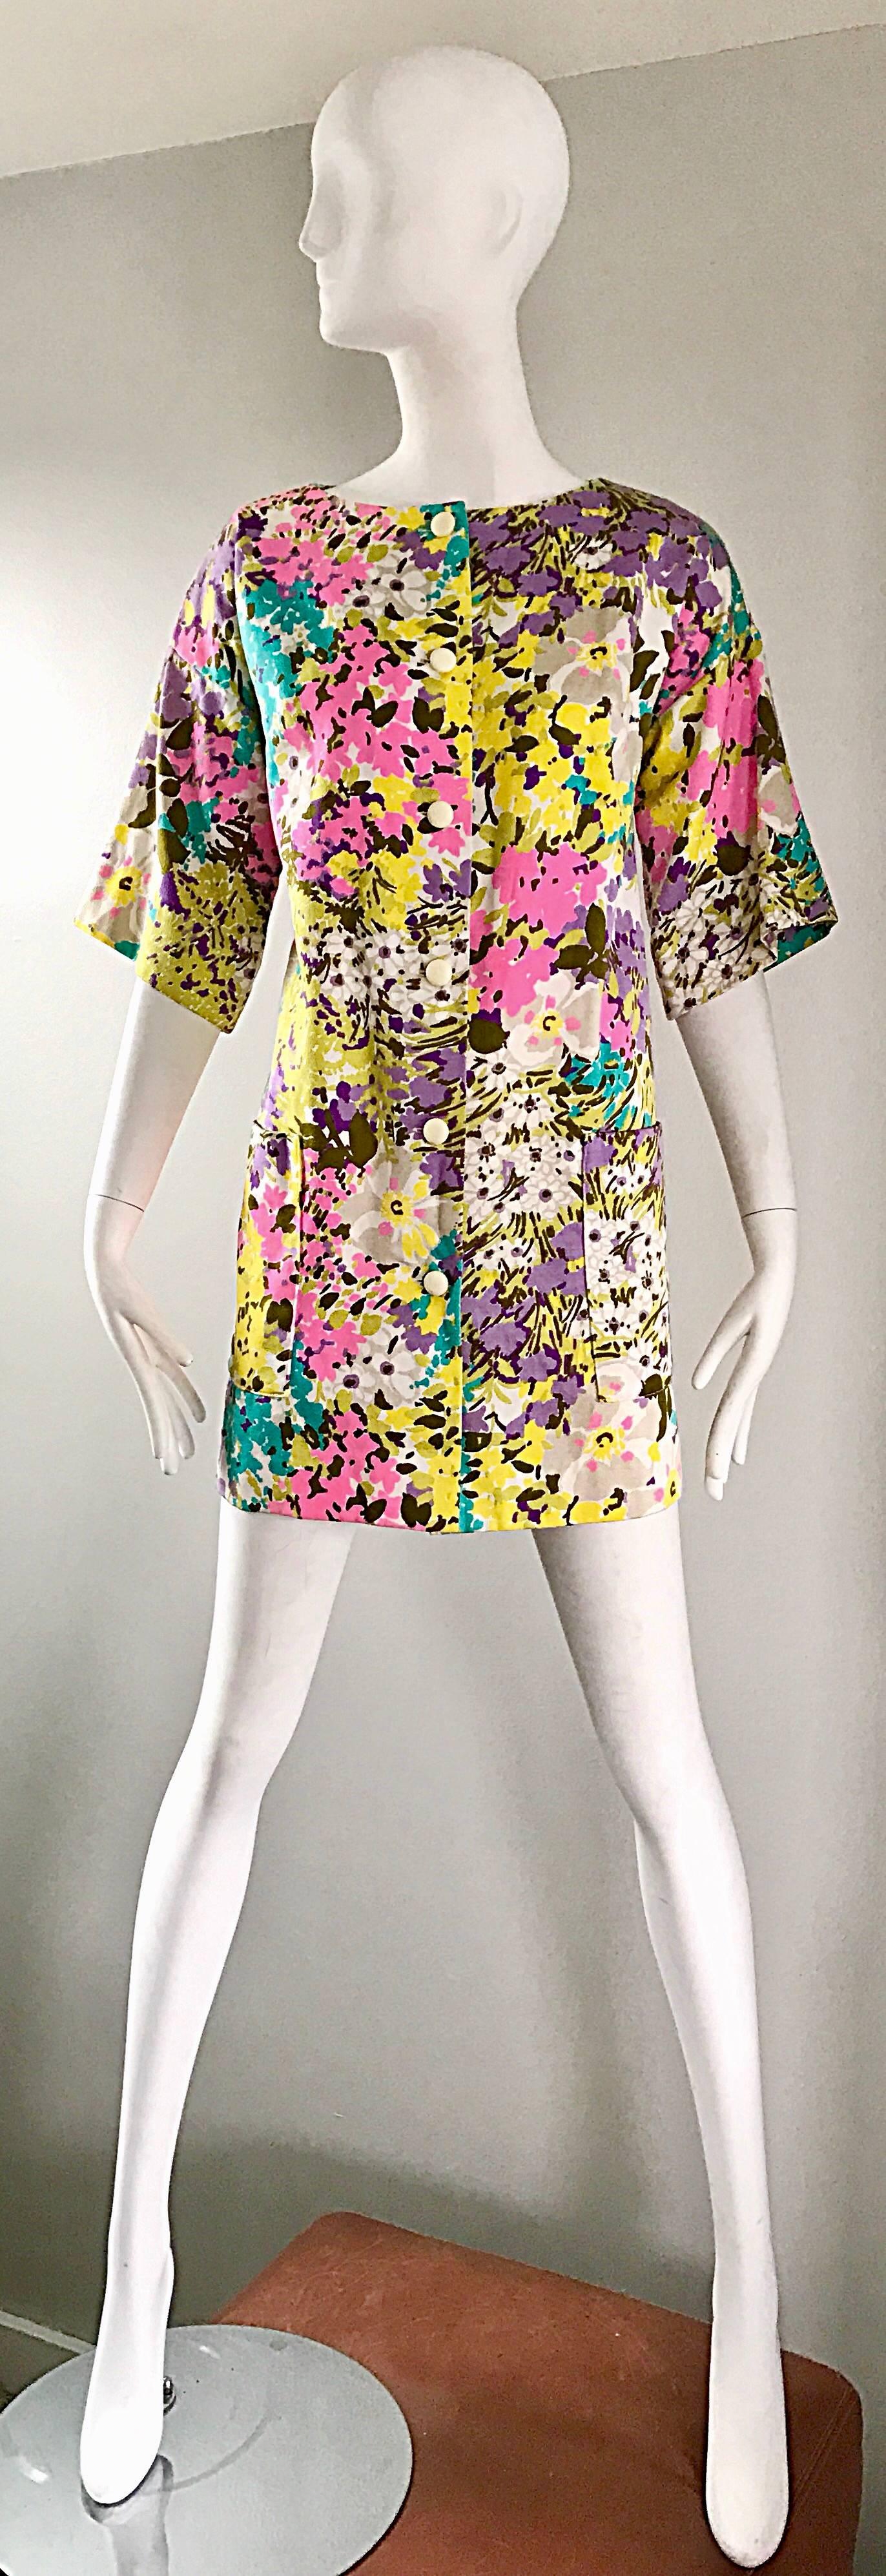 Chic robe mini A - Line ou veste swing de TORI RICHARD pour I MAGNIN datant du milieu des années 60 ! Whiting présente des couleurs pastel vibrantes en rose, violet, bleu sarcelle, jaune et blanc. Poche de chaque côté de la taille. Boutons-pression